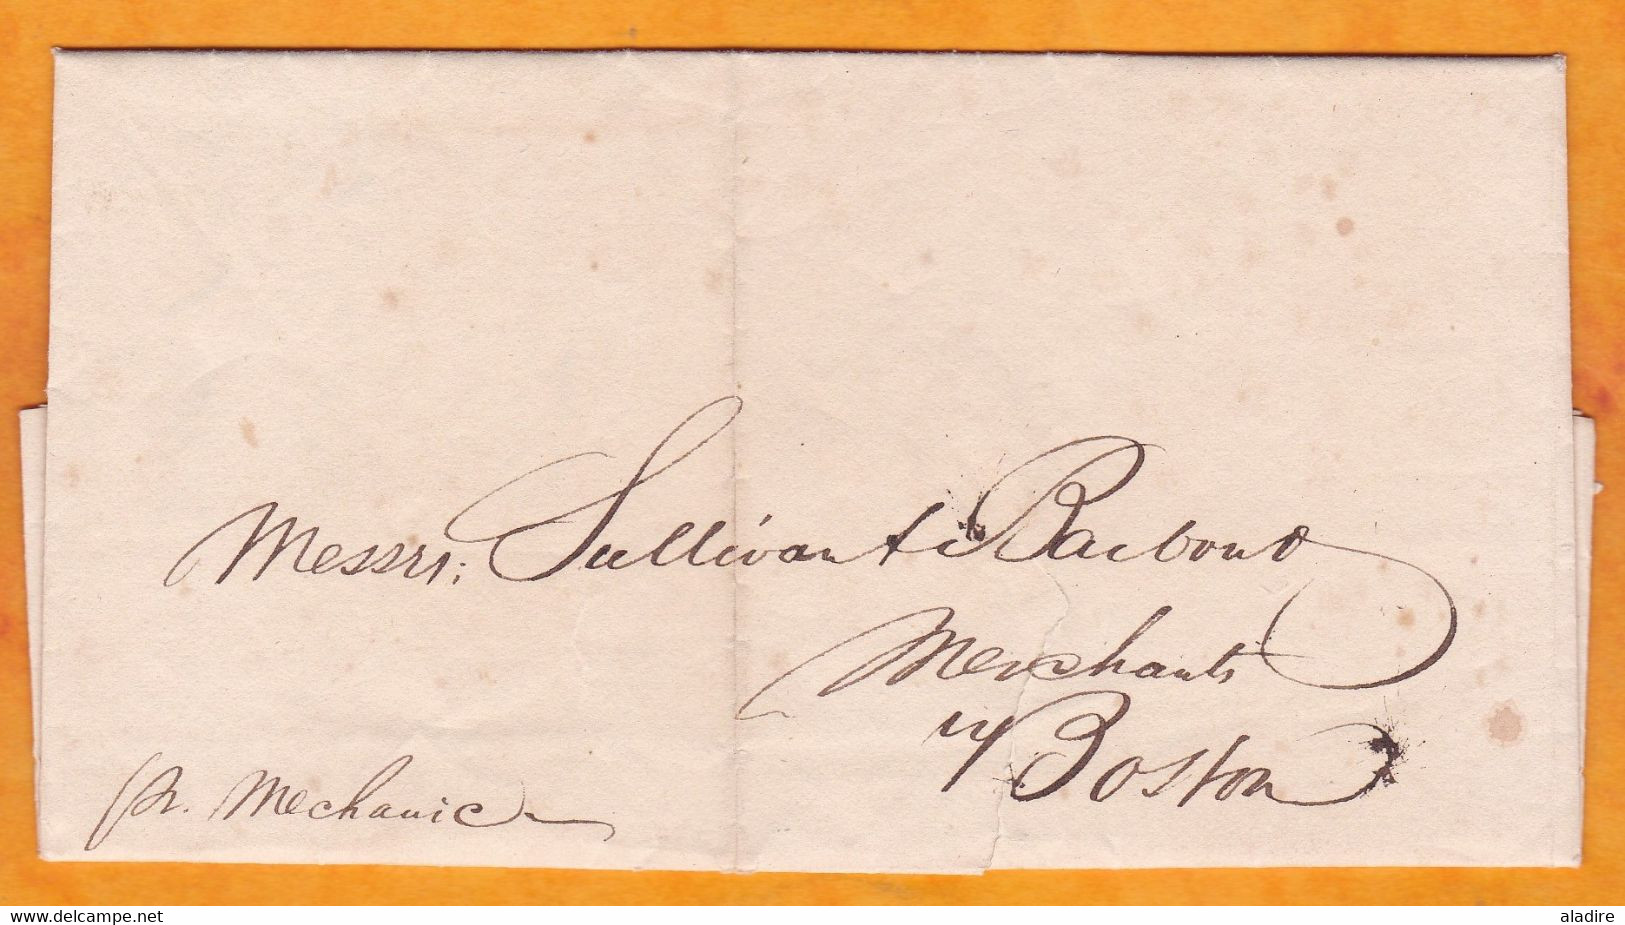 1834 - Enveloppe Pliée De Belfast, Irlande, Grande Bretagne Vers Boston, USA Par Navire Mechanic - ...-1840 Préphilatélie